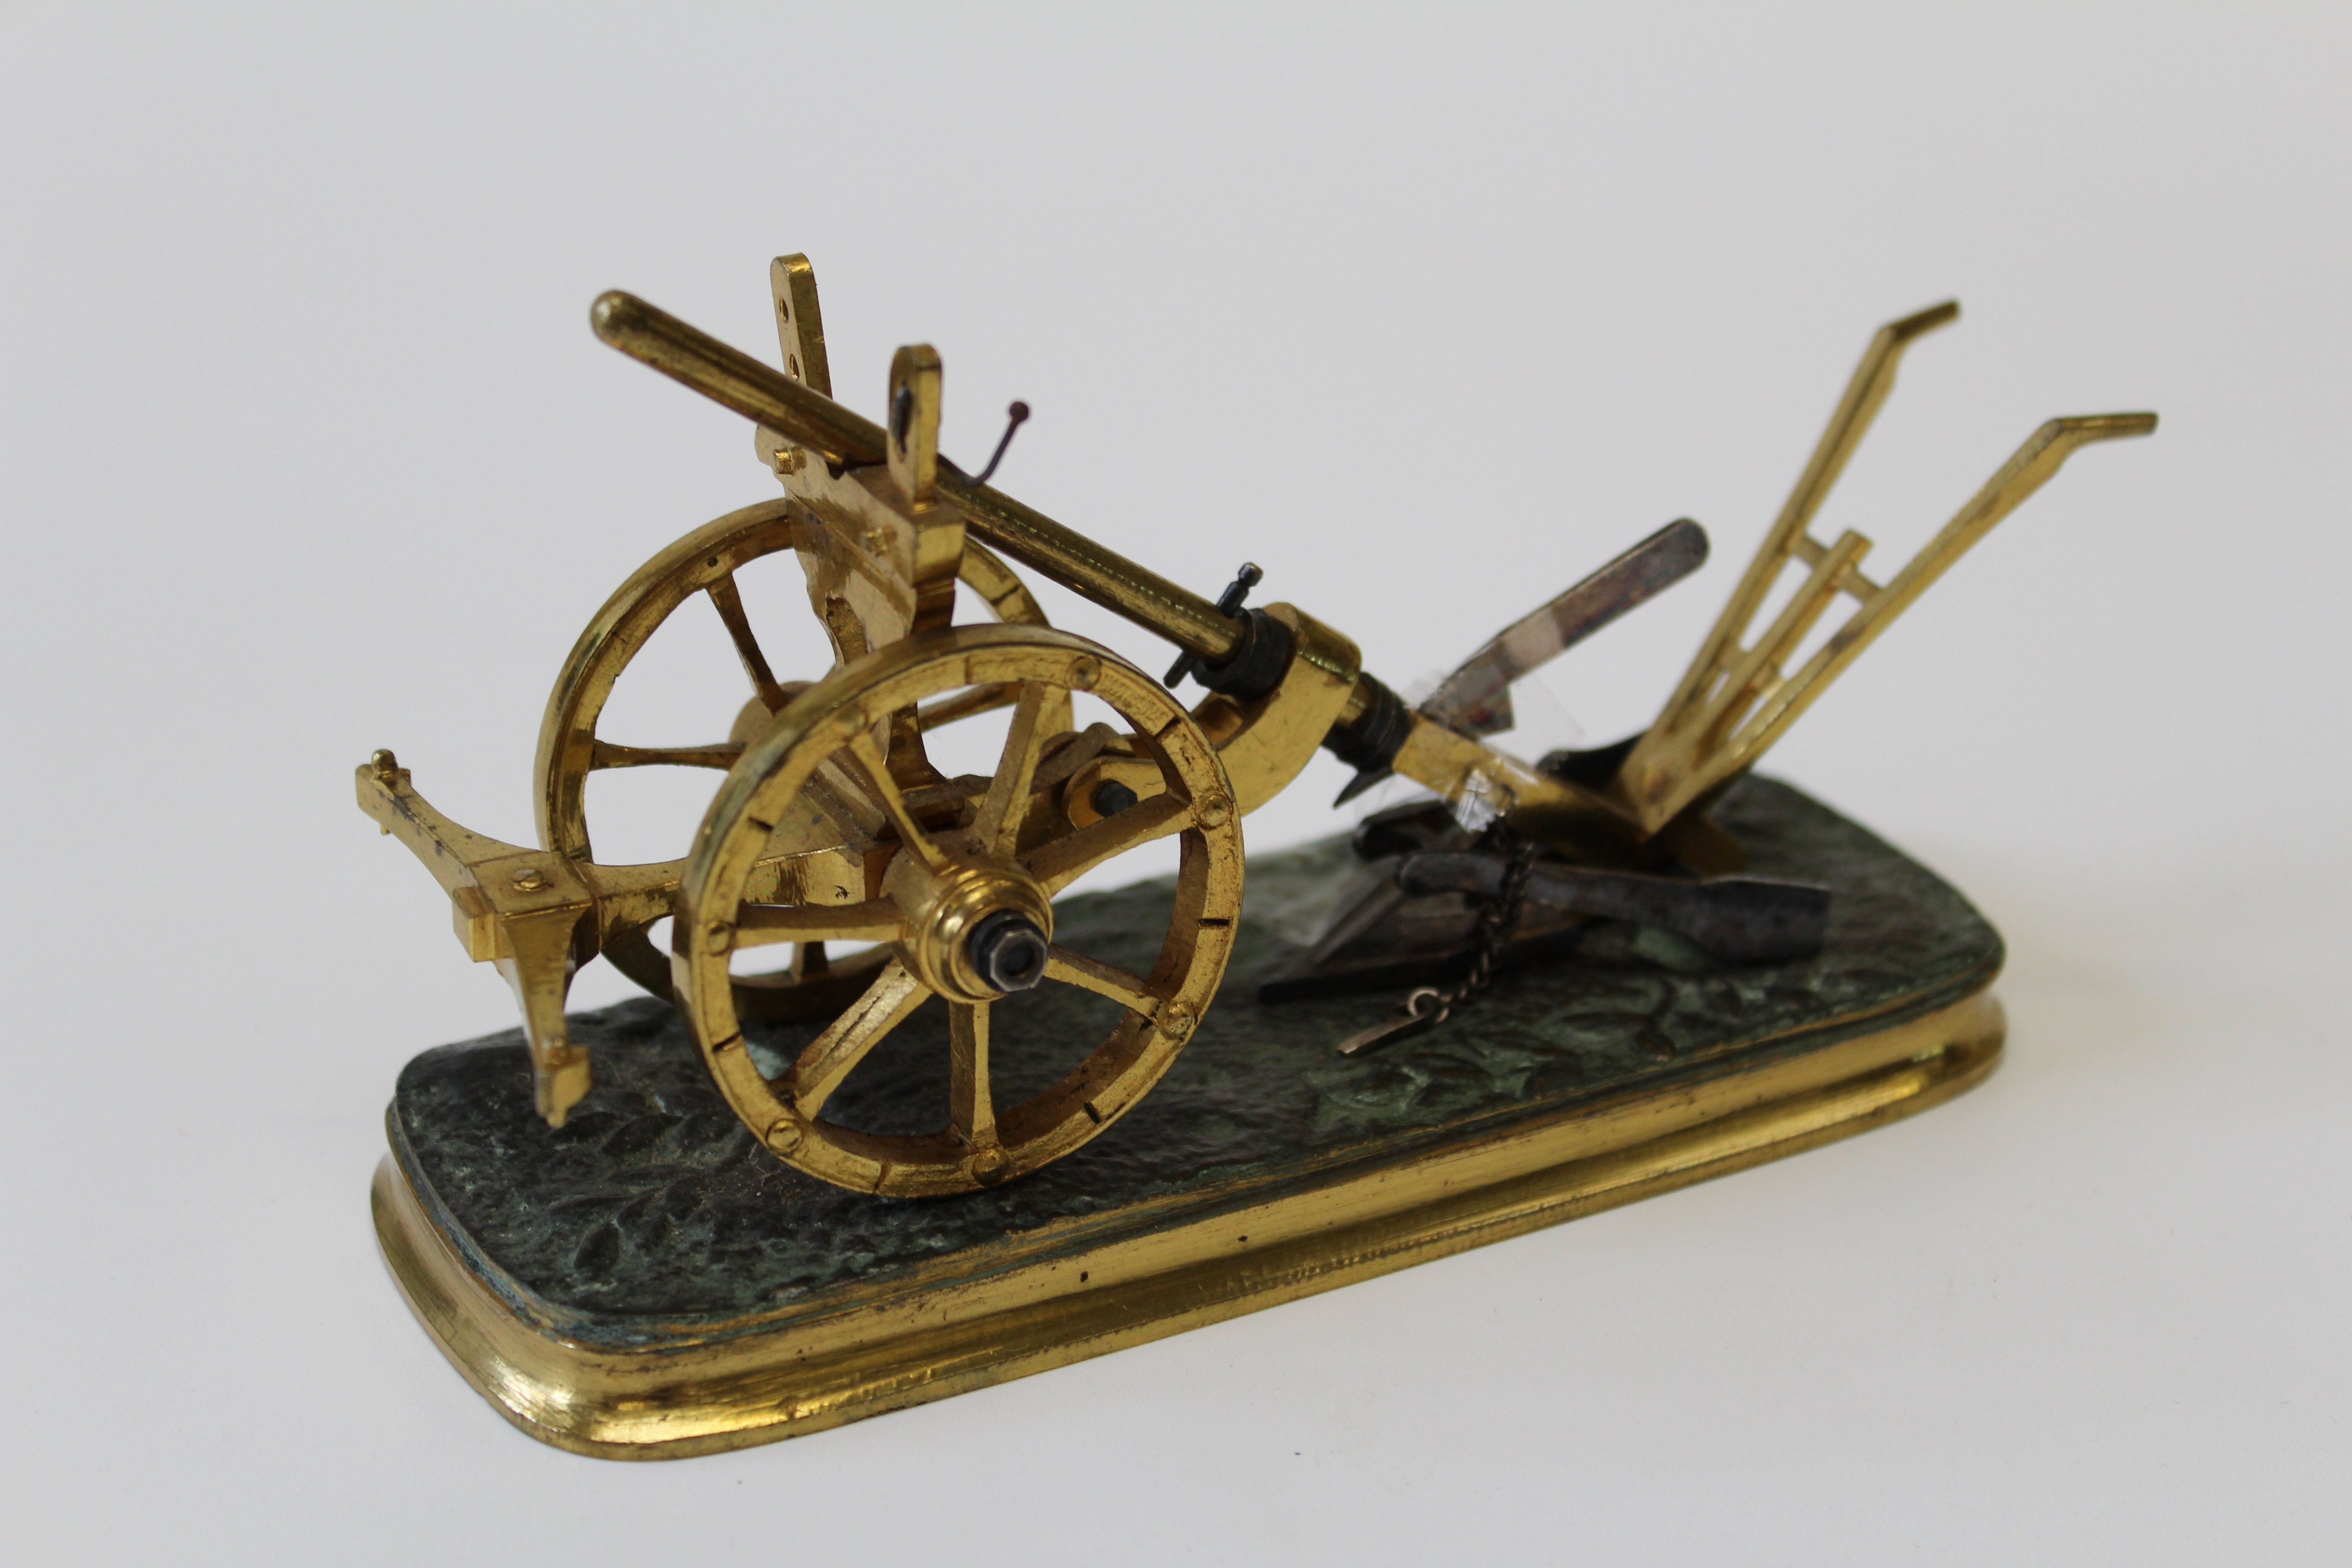 A 20th century miniature gilt metal model of a vintage plough, 15cm long